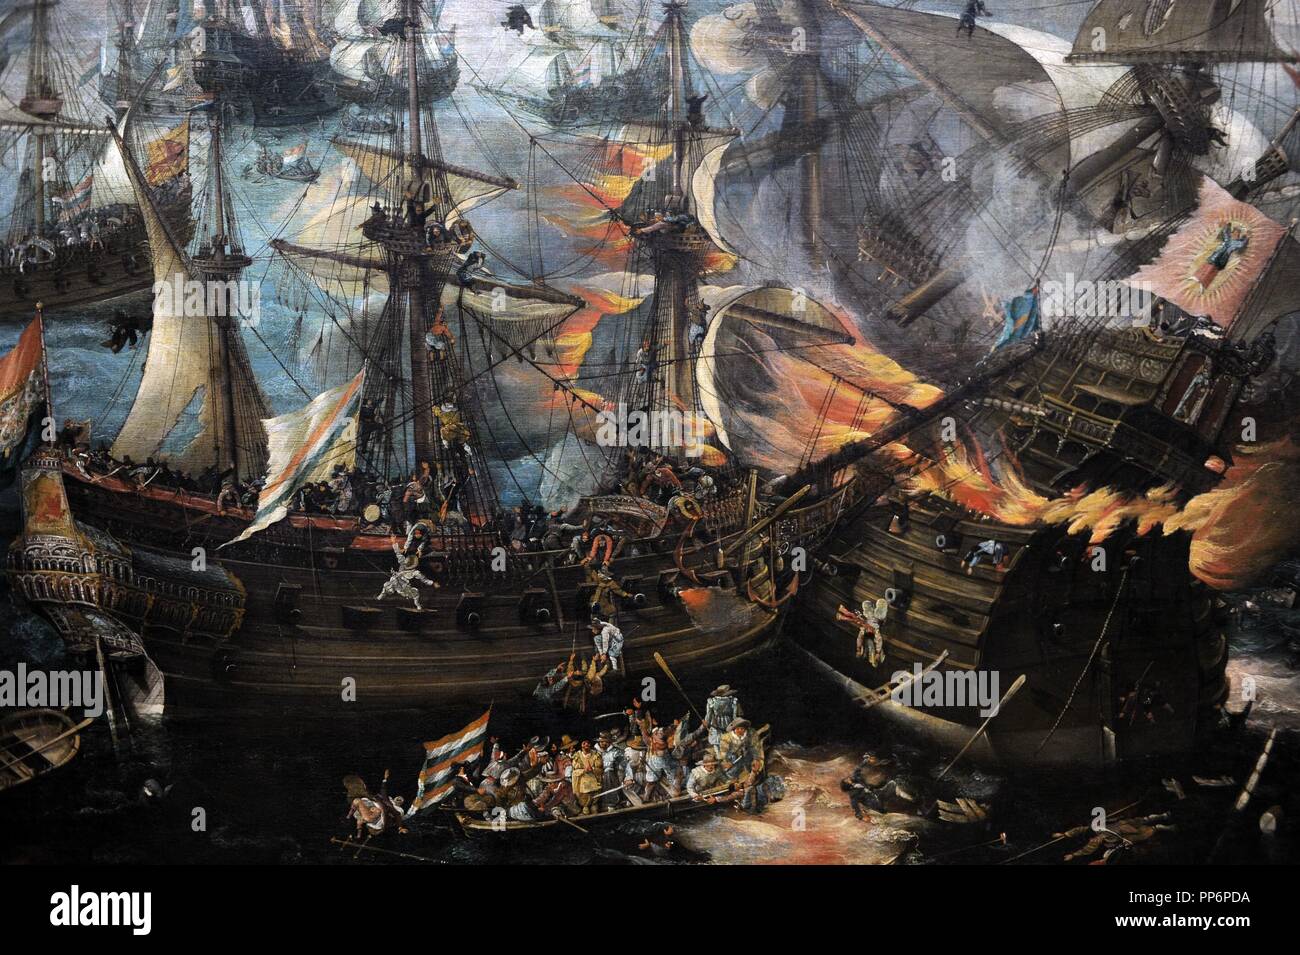 Cornelis Claesz Van Wieringen (c.1577-1633). Peintre hollandais. L'explosion de la vedette espagnole lors de la bataille de Gibraltar, c.1621. Détail. Rijksmuseum. Amsterdam. La Hollande. Banque D'Images